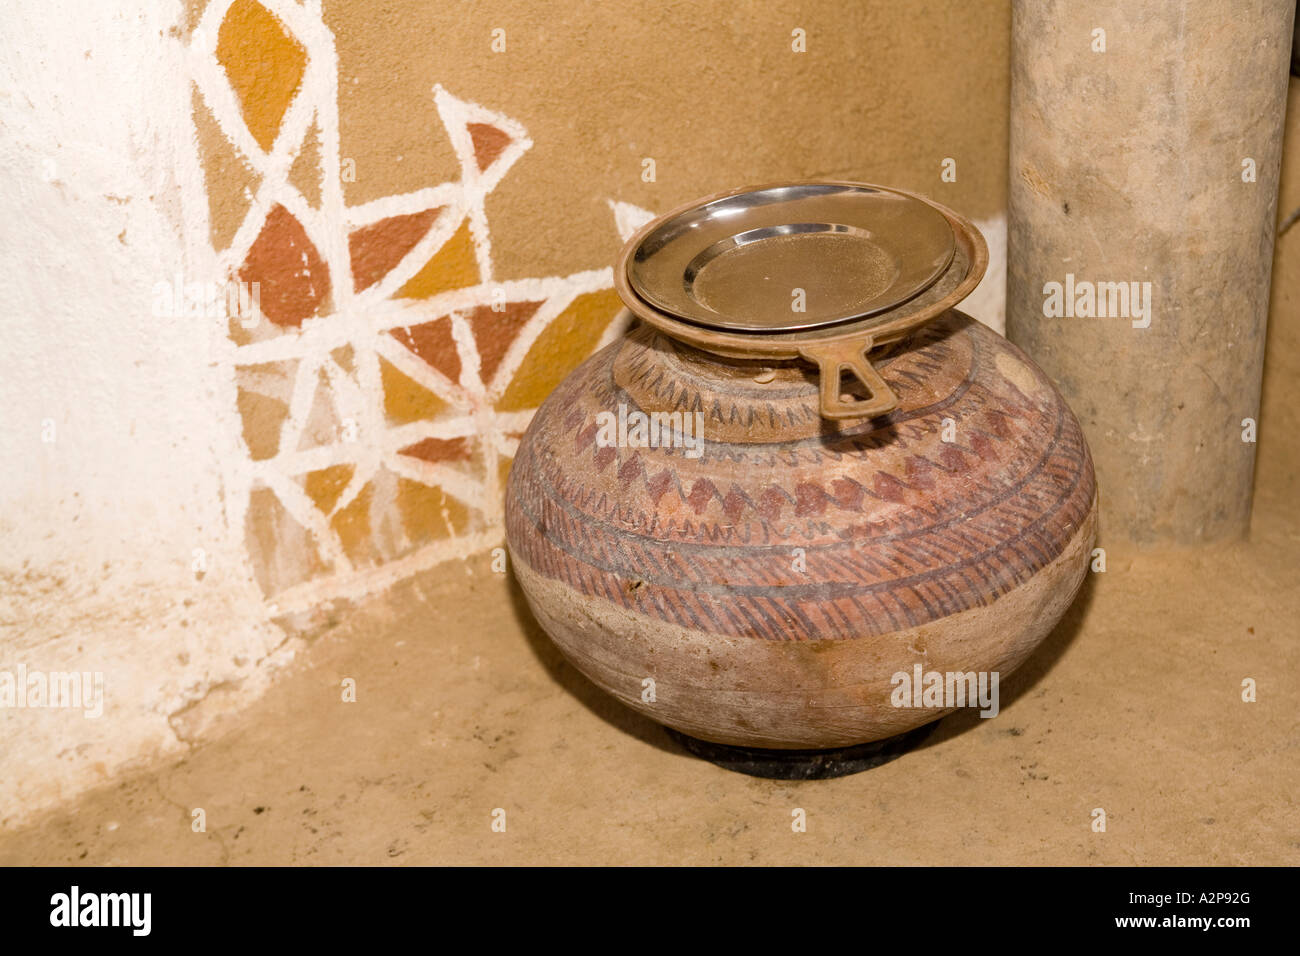 Inde Rajasthan désert de Thar village décoré de l'architecture et de l'eau boue rendue mur pot Banque D'Images